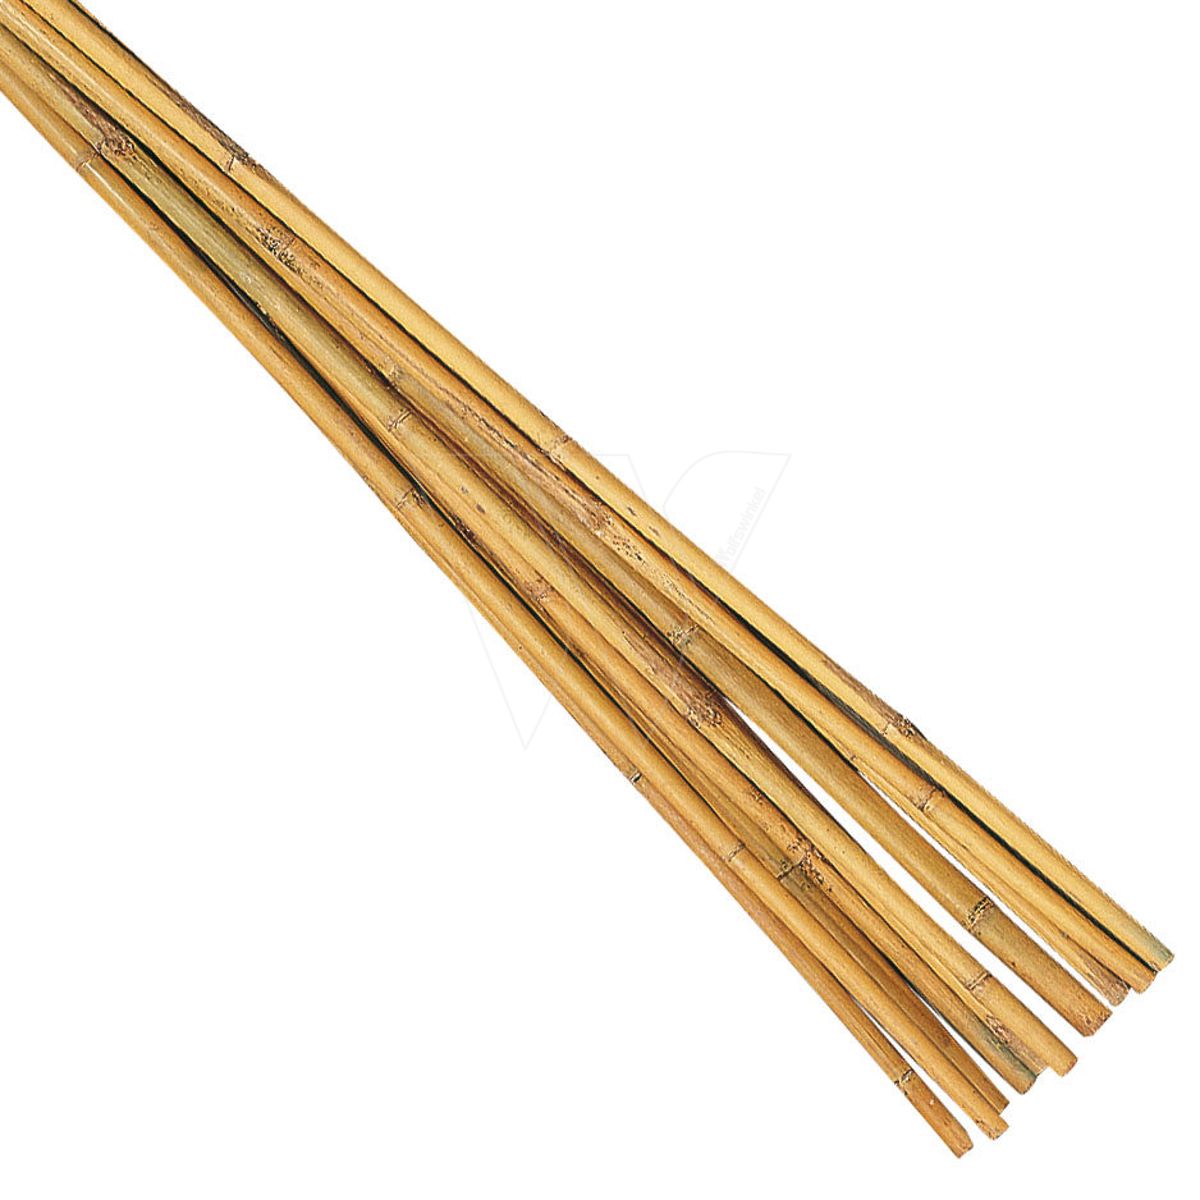 Bambusrohr 60 cm (10 stück)